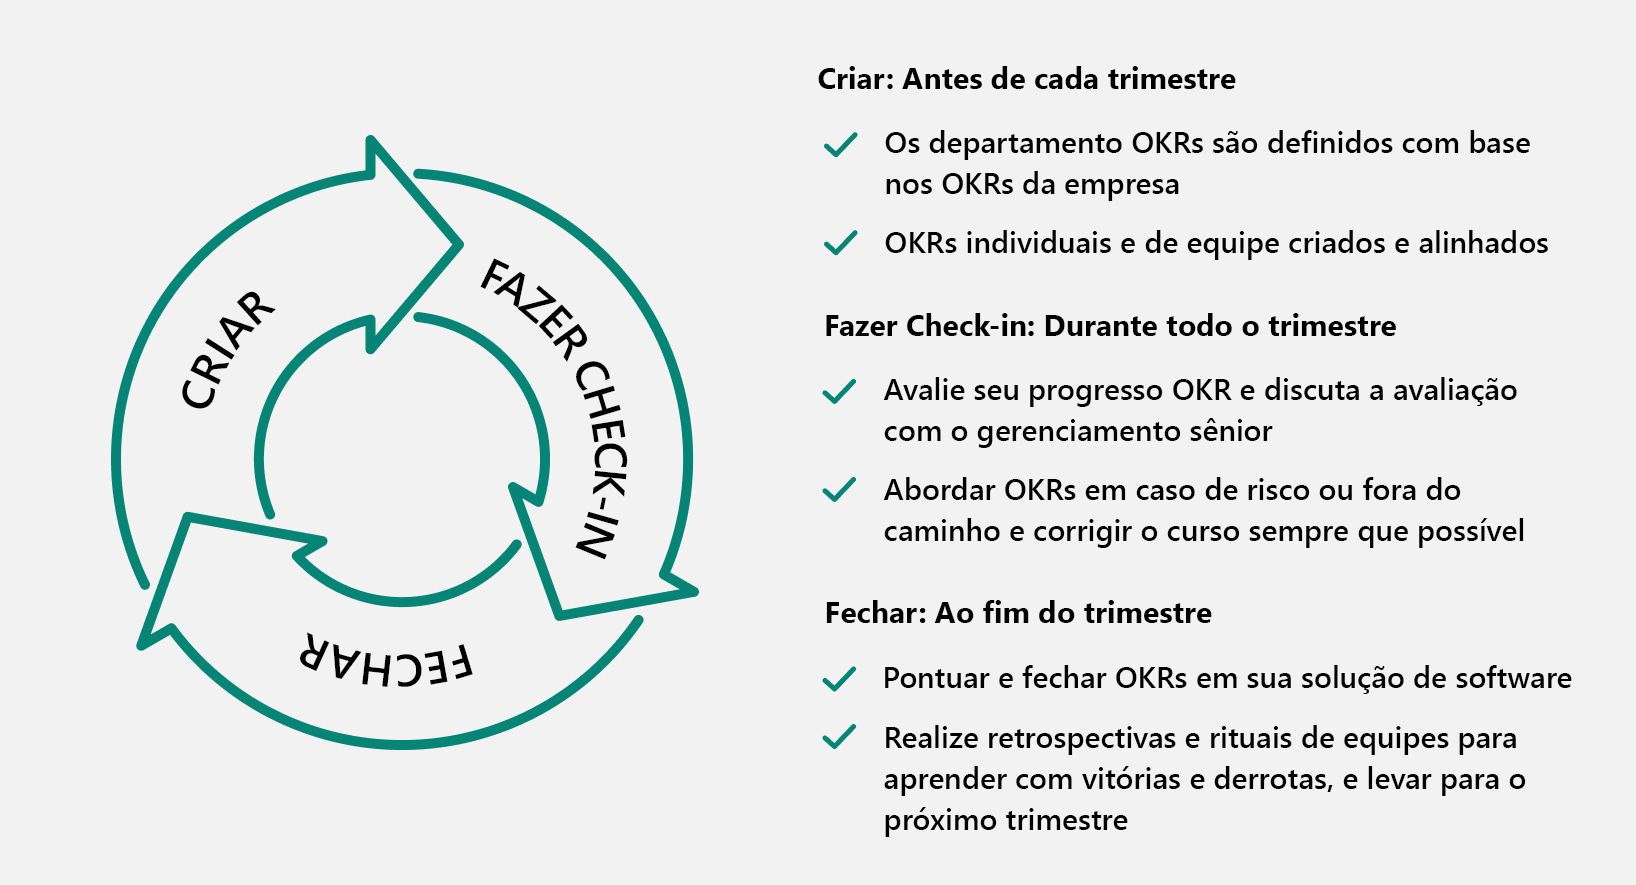 Diagrama do ciclo de três Cs: criar, fazer check-in e fechar, com exemplos em texto do que acontece em cada fase.